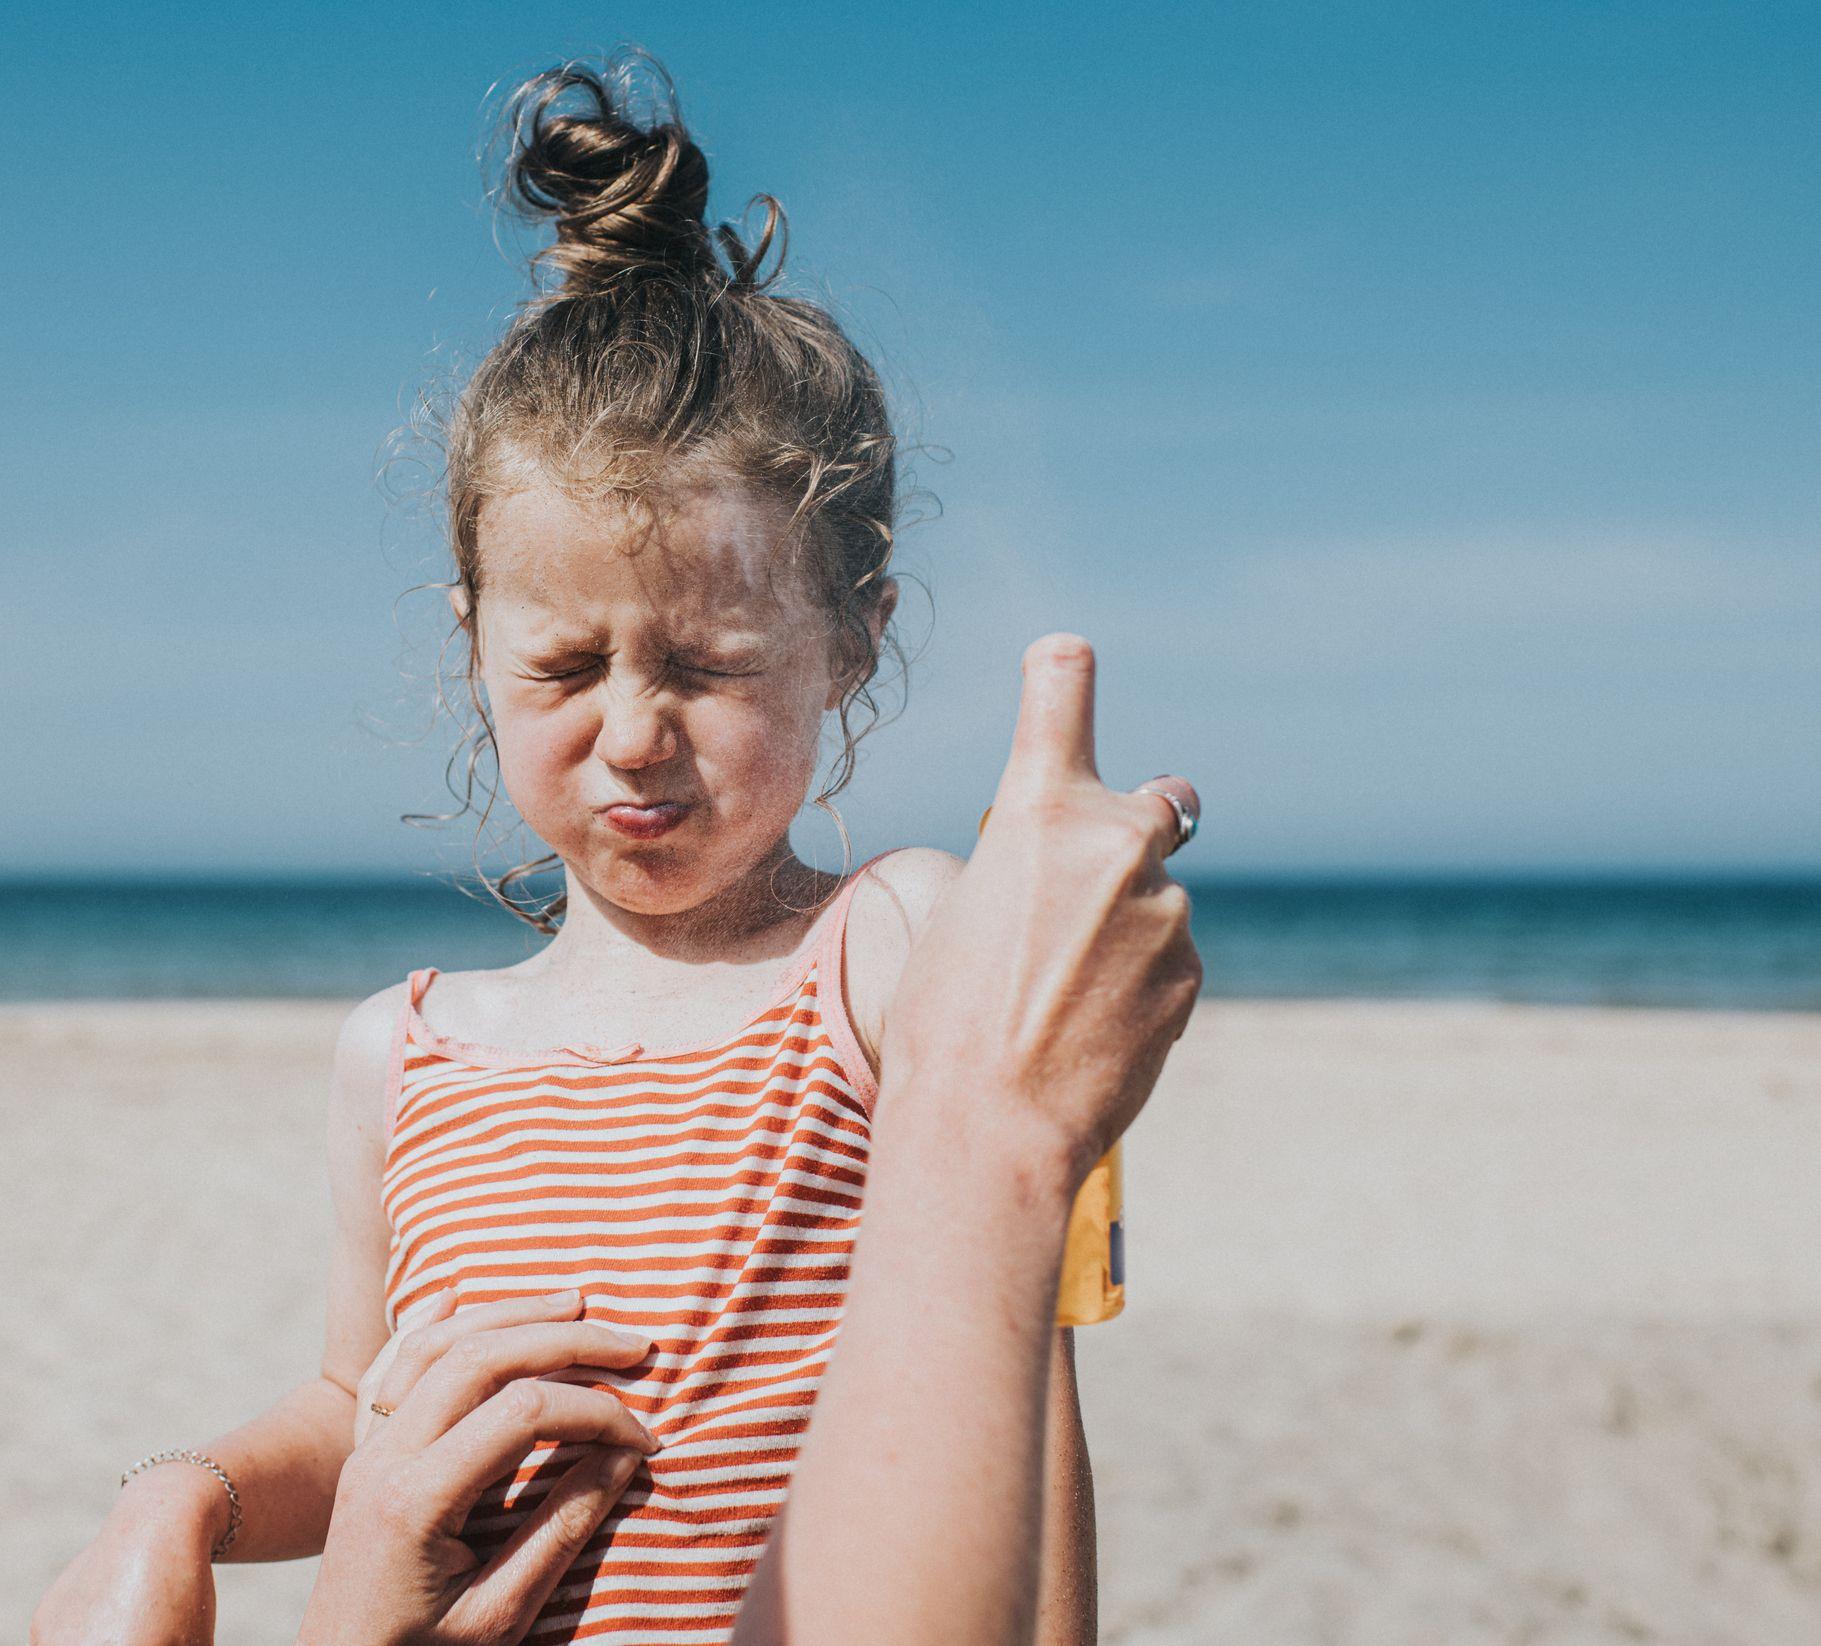 فتاة صغيرة لطيفة تحبس أنفاسها وتجفل بينما تقوم سيدة تظهر يداها في الصورة، برش واقي الشمس على وجه الطفلة الصغير، أثناء وقوفهما على الشاطئ.